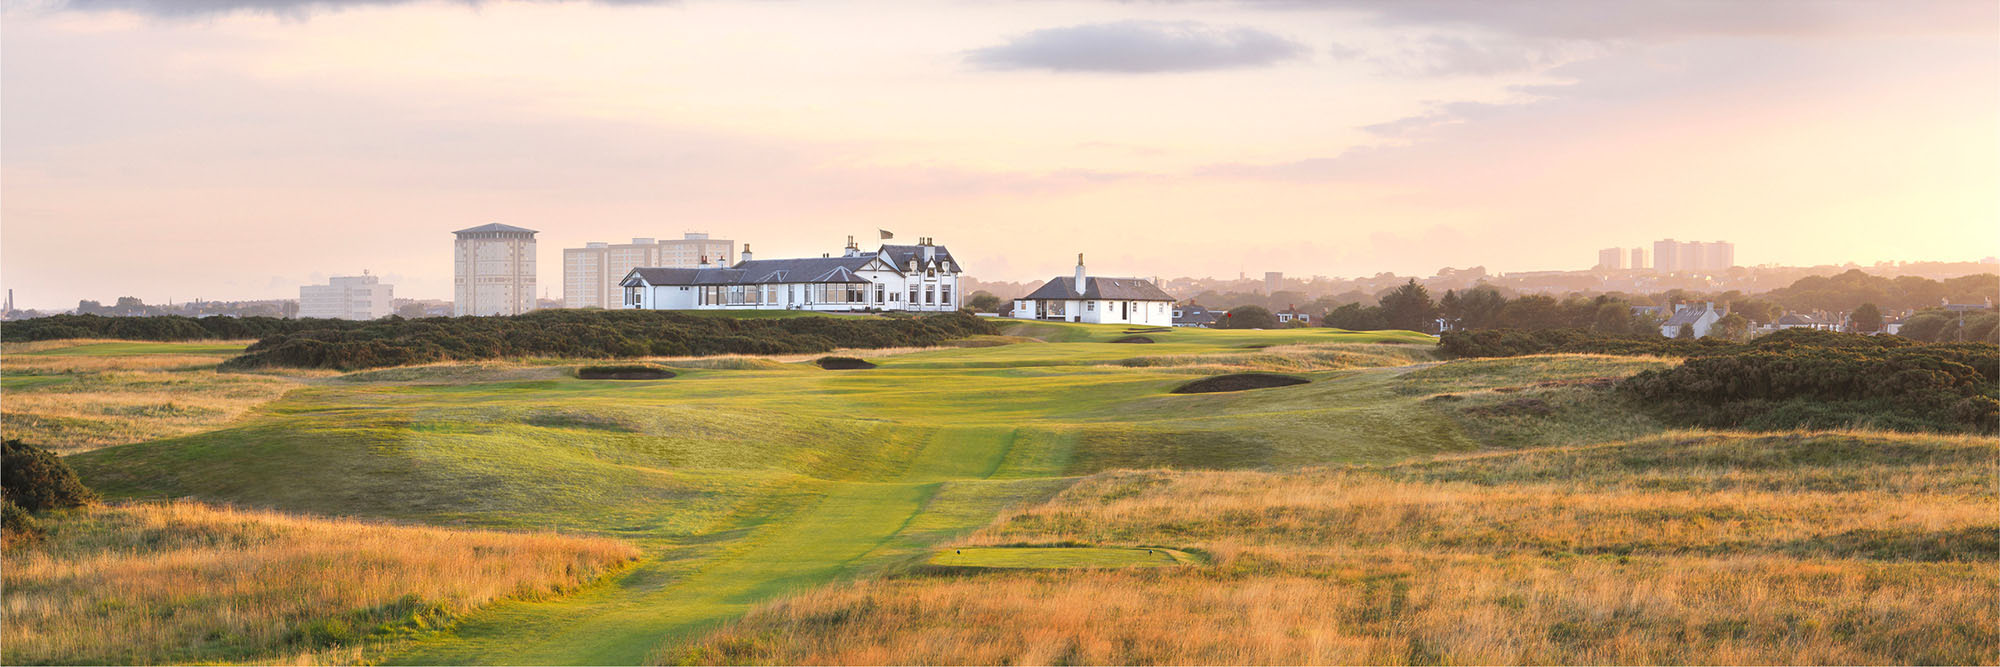 Royal Aberdeen Golf Club No.18